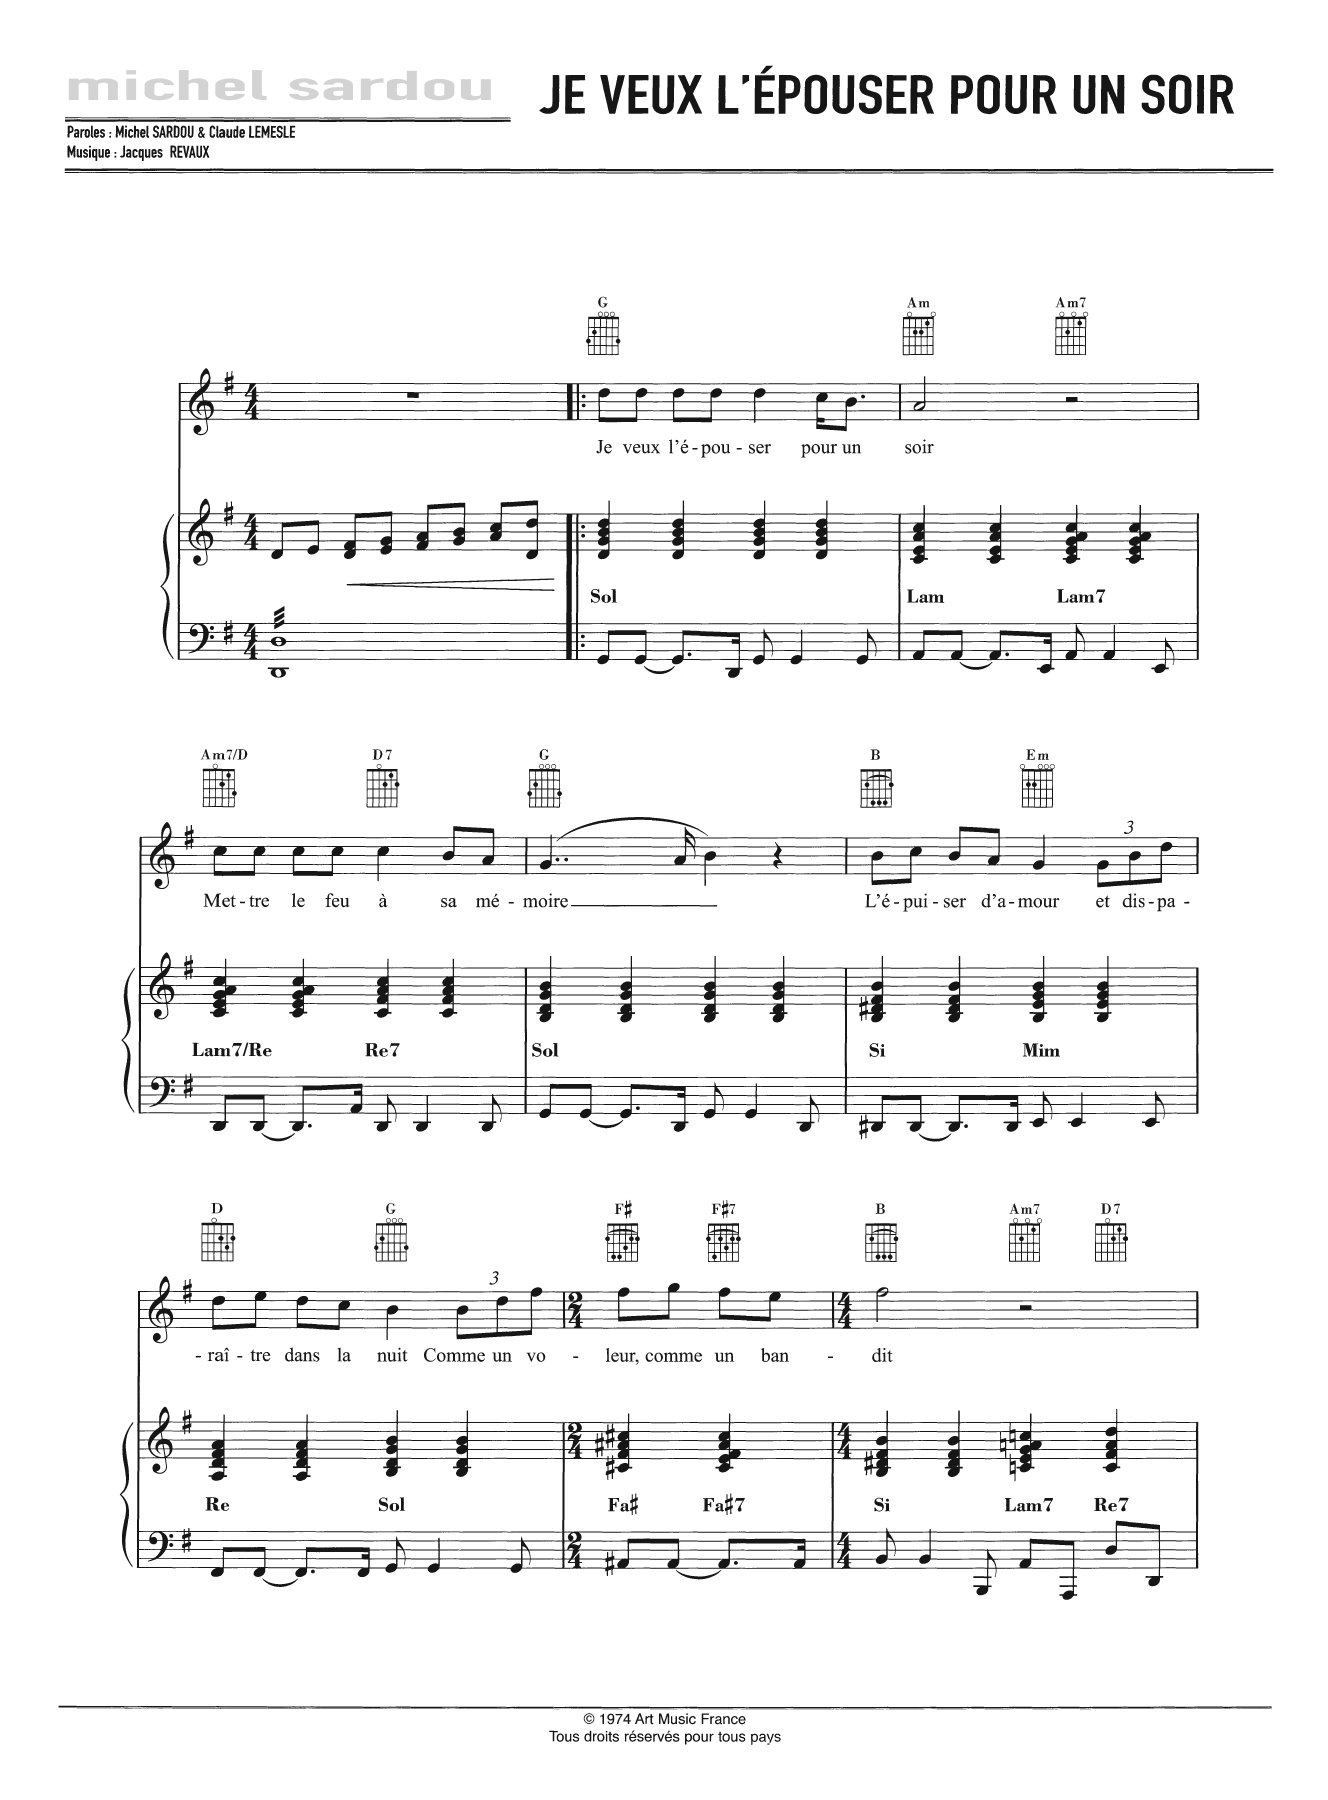 Michel Sardou Je Veux L'Epouser Pour Un Soir Sheet Music Notes & Chords for Piano, Vocal & Guitar - Download or Print PDF